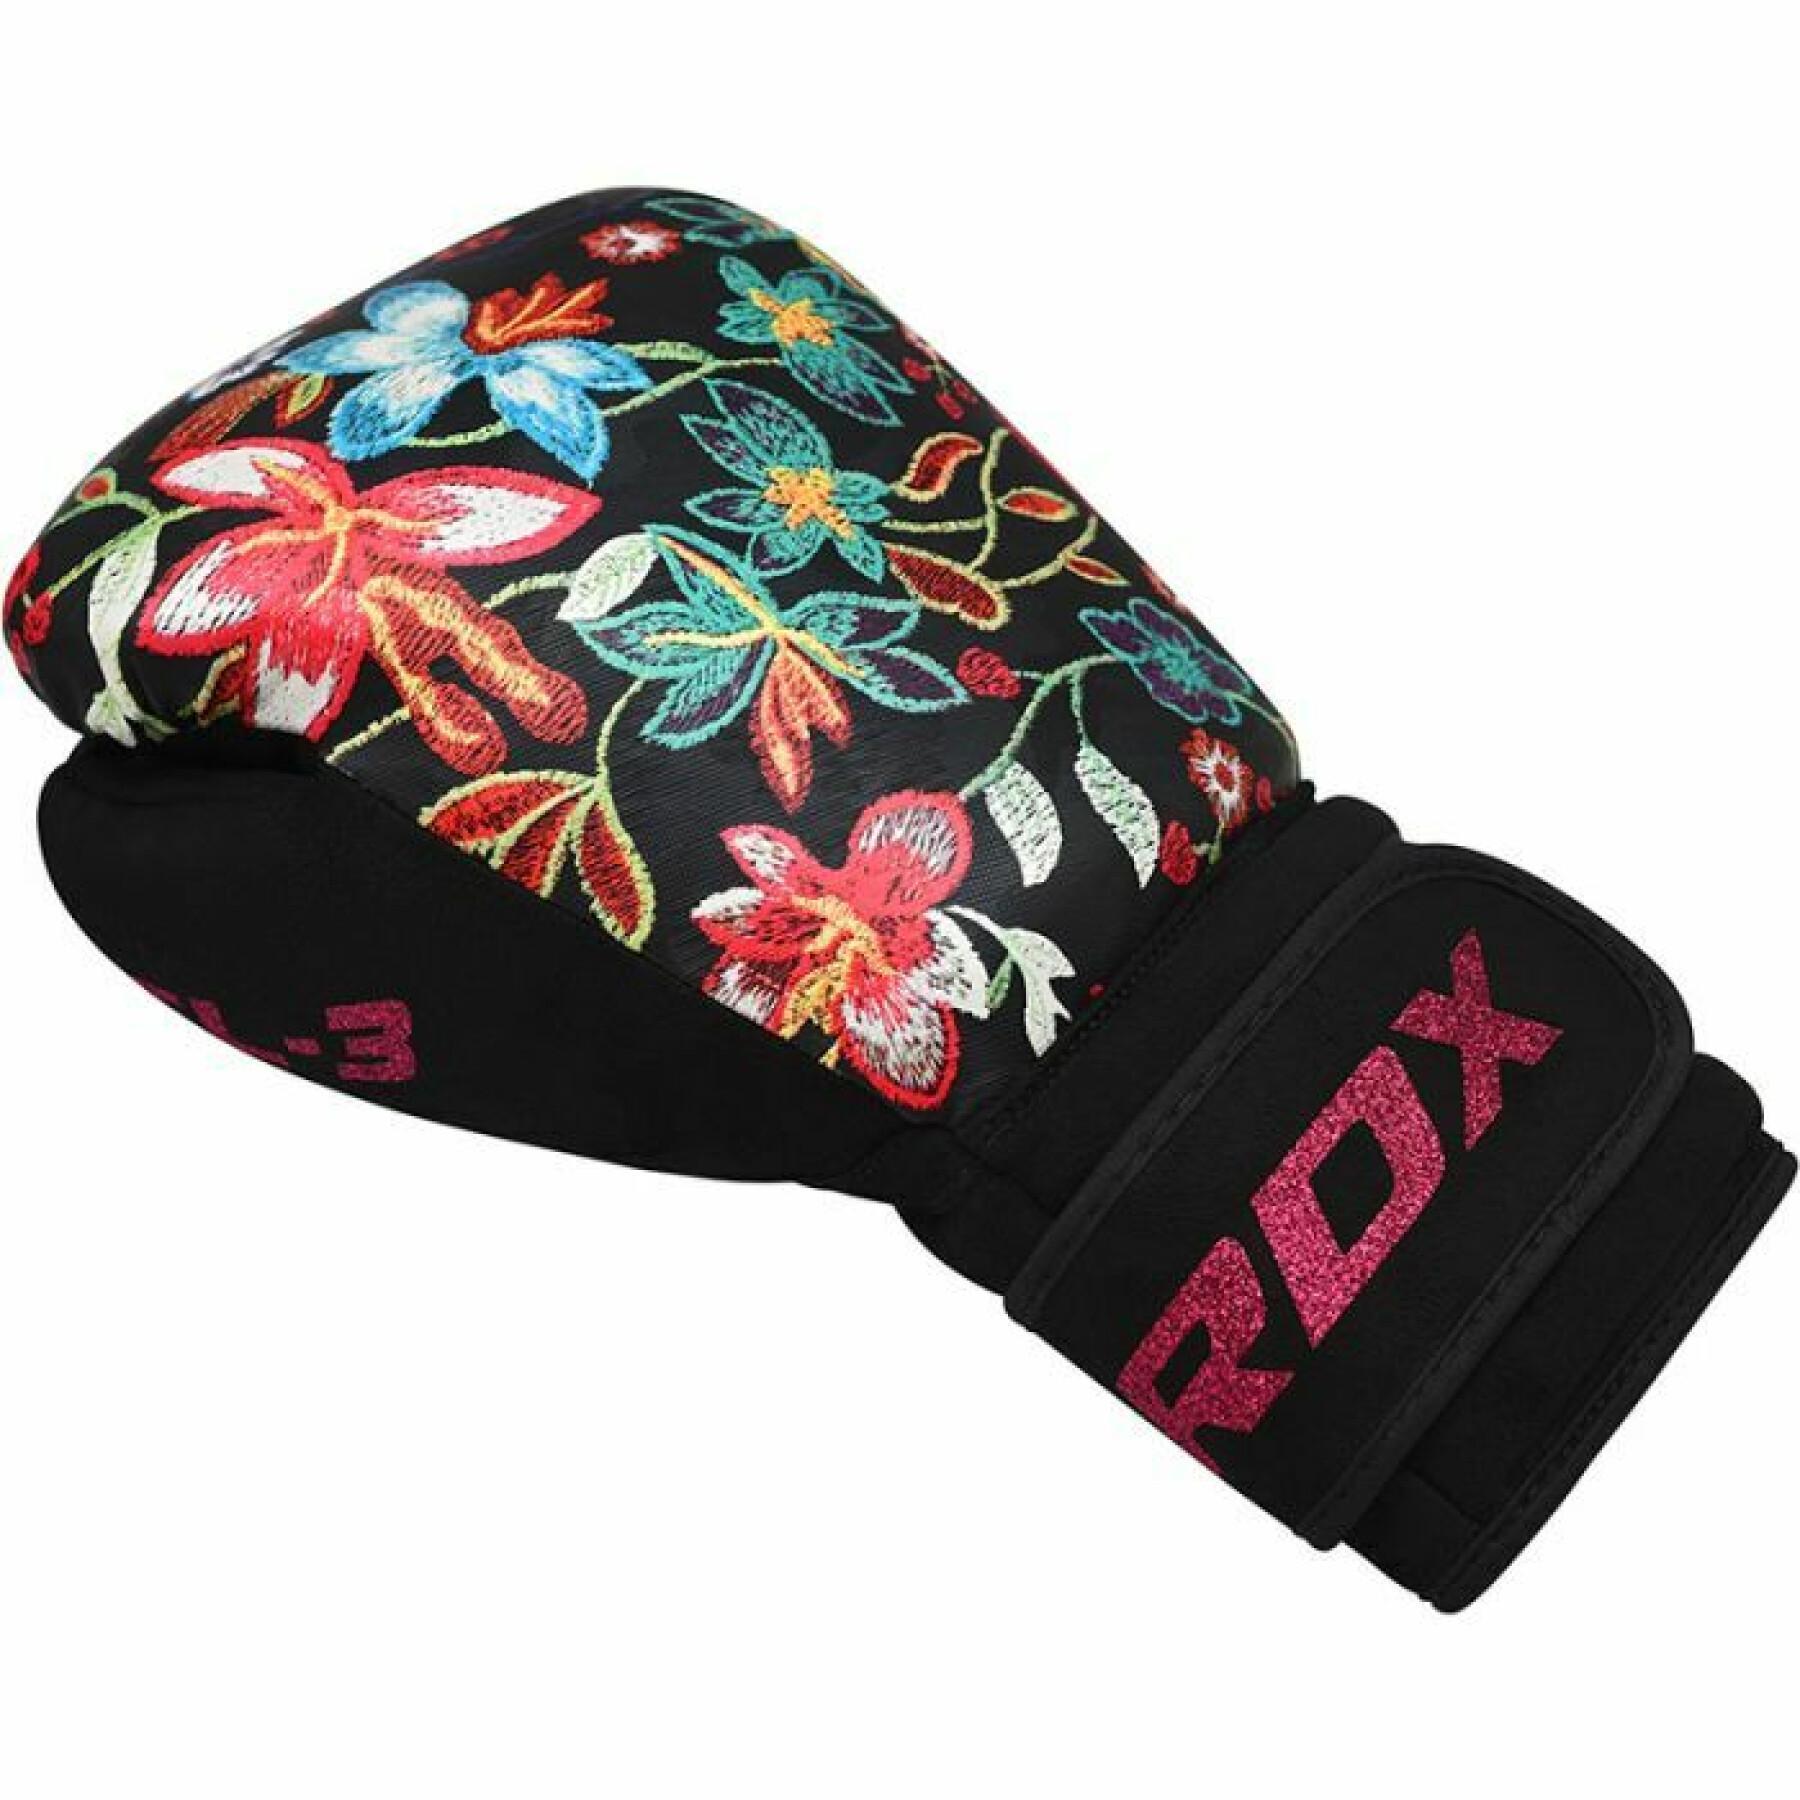 Boxing gloves for women RDX FL